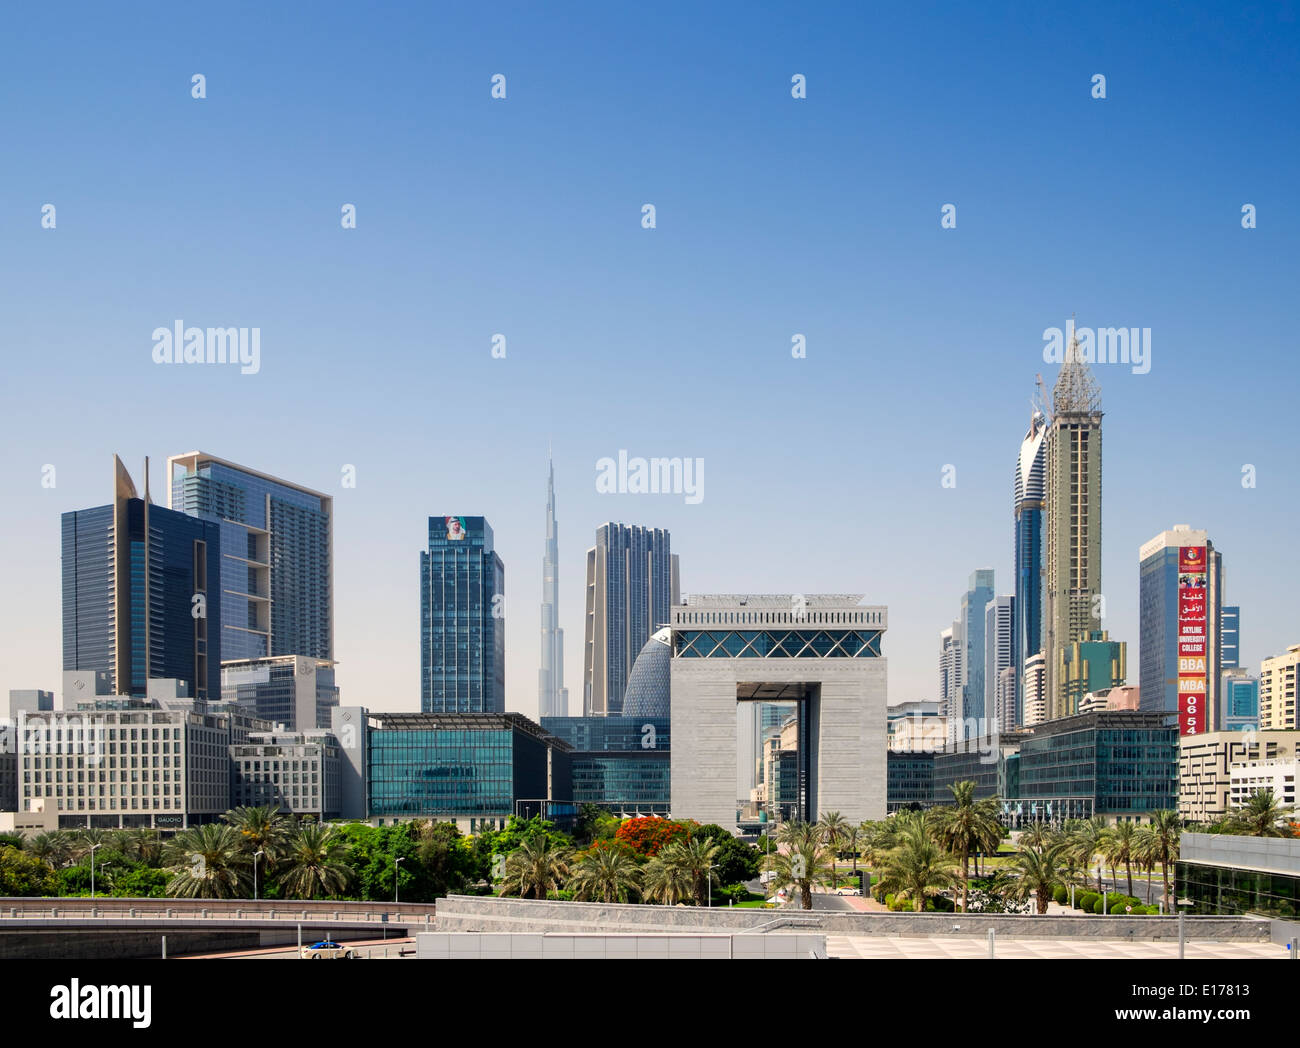 Avis de DIFC le Centre Financier International de Dubaï (Free zone) dans le quartier financier de Dubaï, Emirats Arabes Unis Banque D'Images